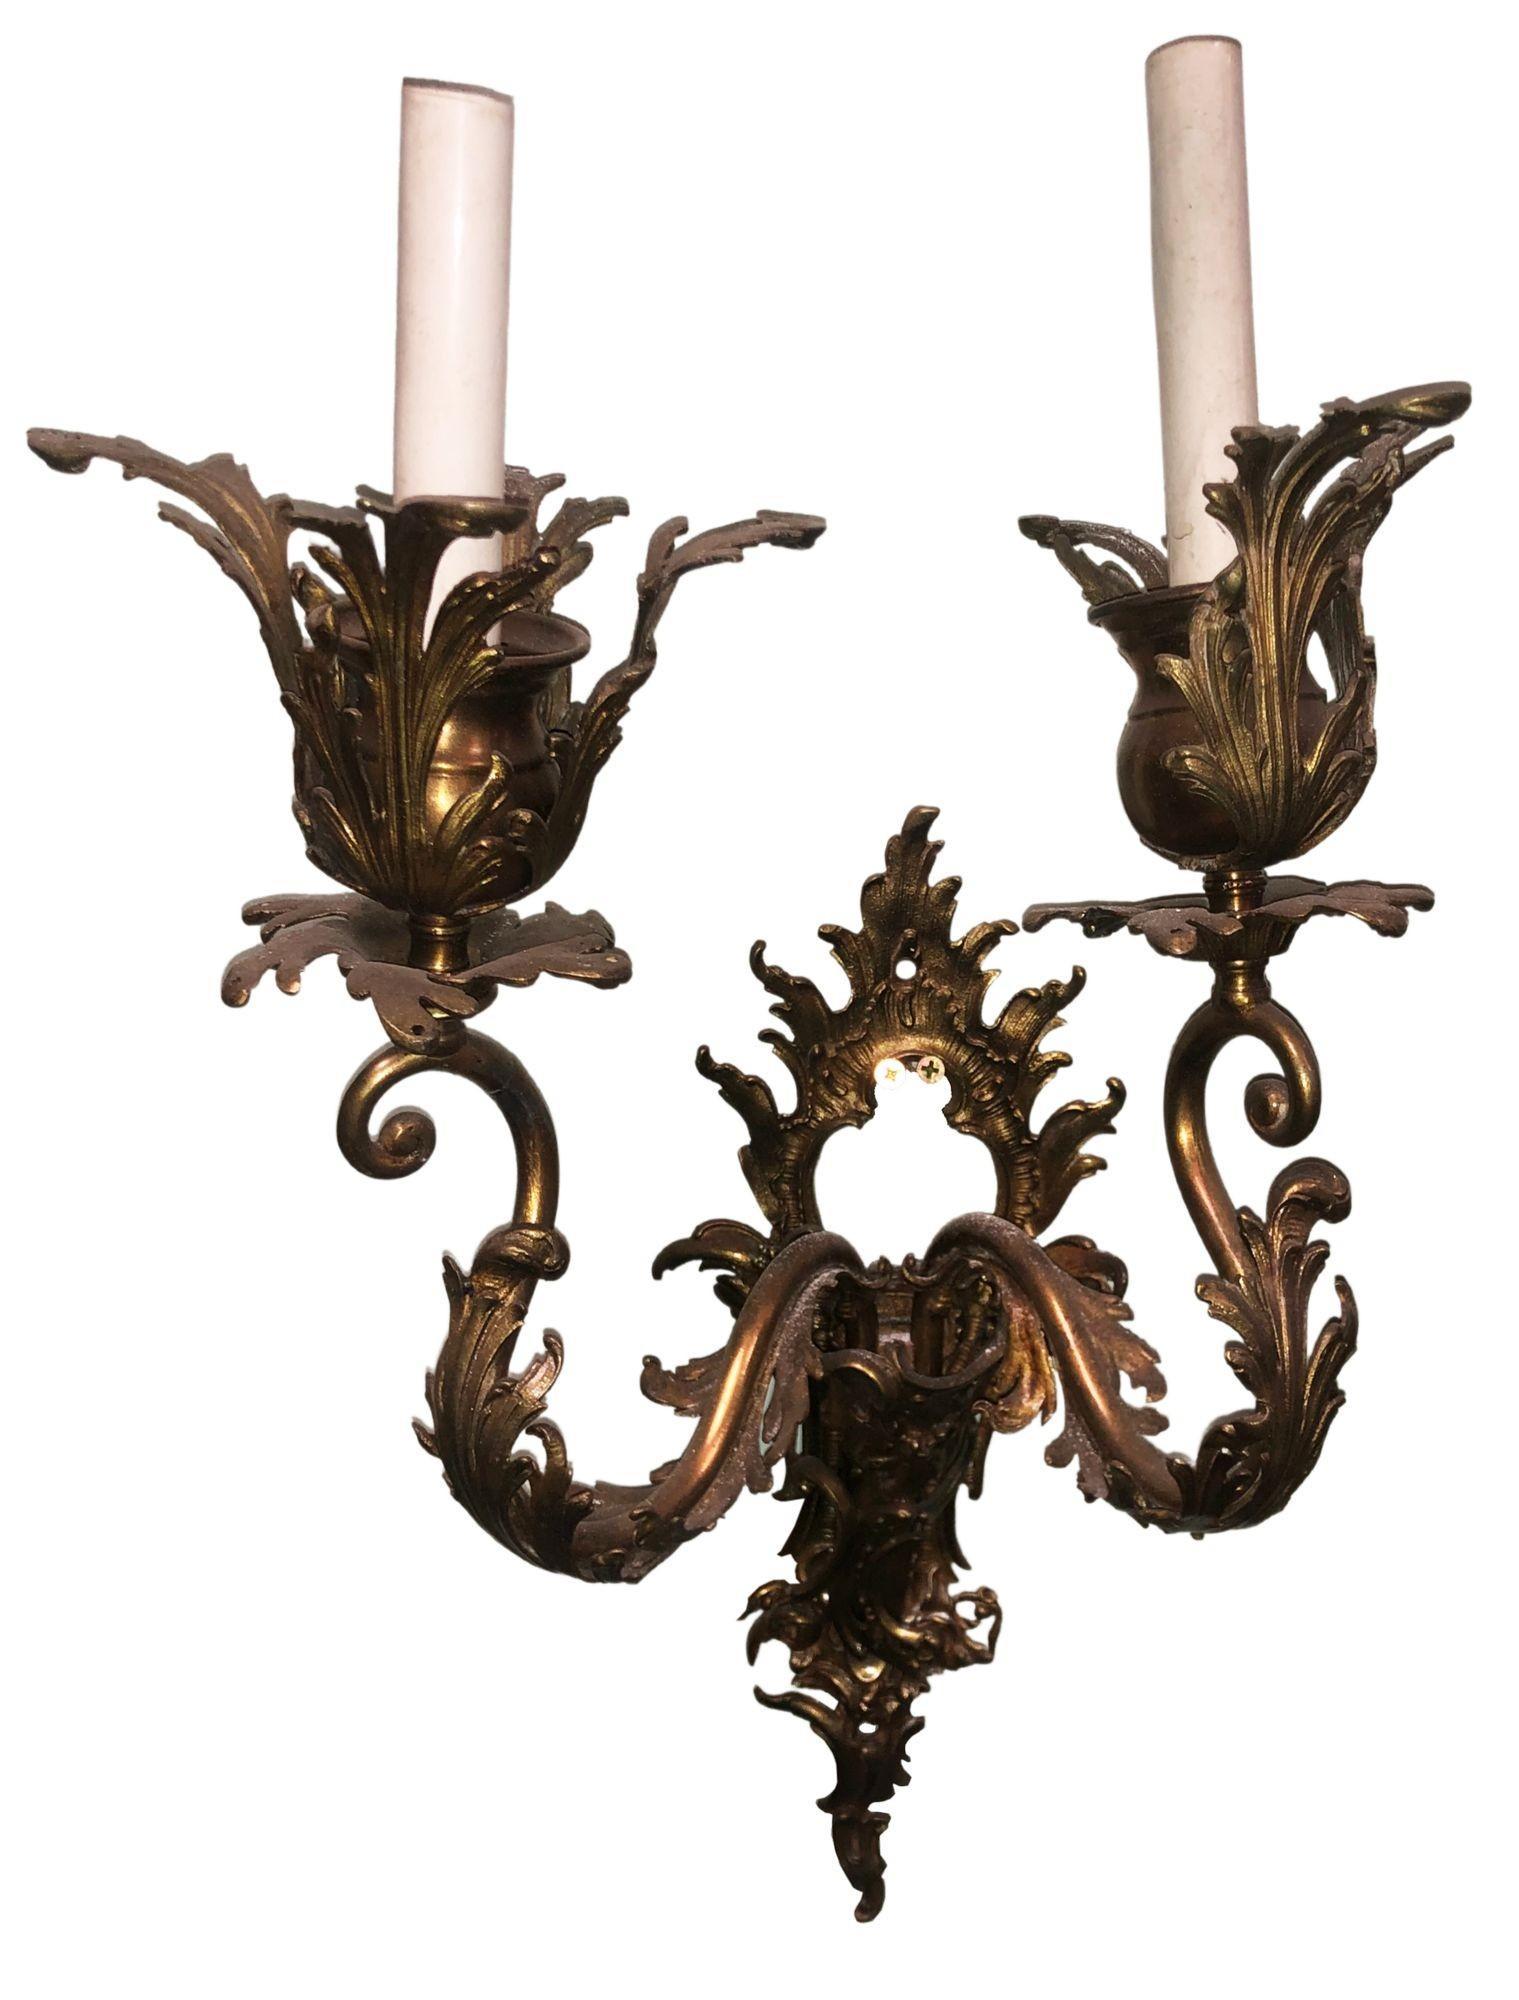 Entdecken Sie Opulenz mit diesem exquisiten Wandleuchter aus Bronze im antiken italienischen Barockstil, der jetzt zum Verkauf steht. Dieses verschnörkelte Stück erinnert an die Pracht des Barocks, mit aufwändigen Details und mehreren Kerzenhaltern.